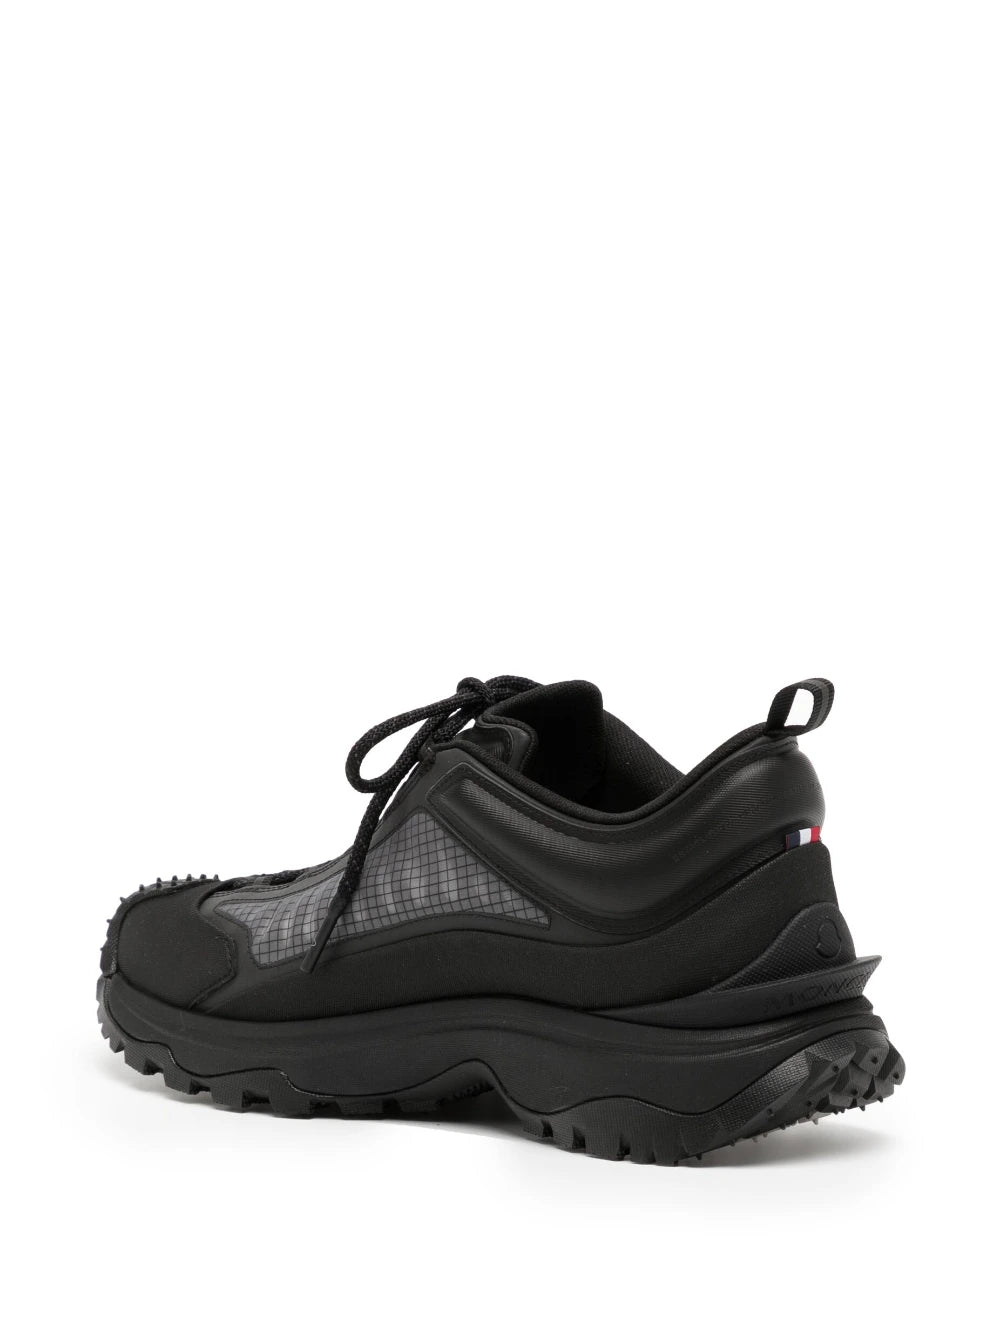 MONCLER GRENOBLE Trailgrip Lite Low Top Sneakers Black - MAISONDEFASHION.COM